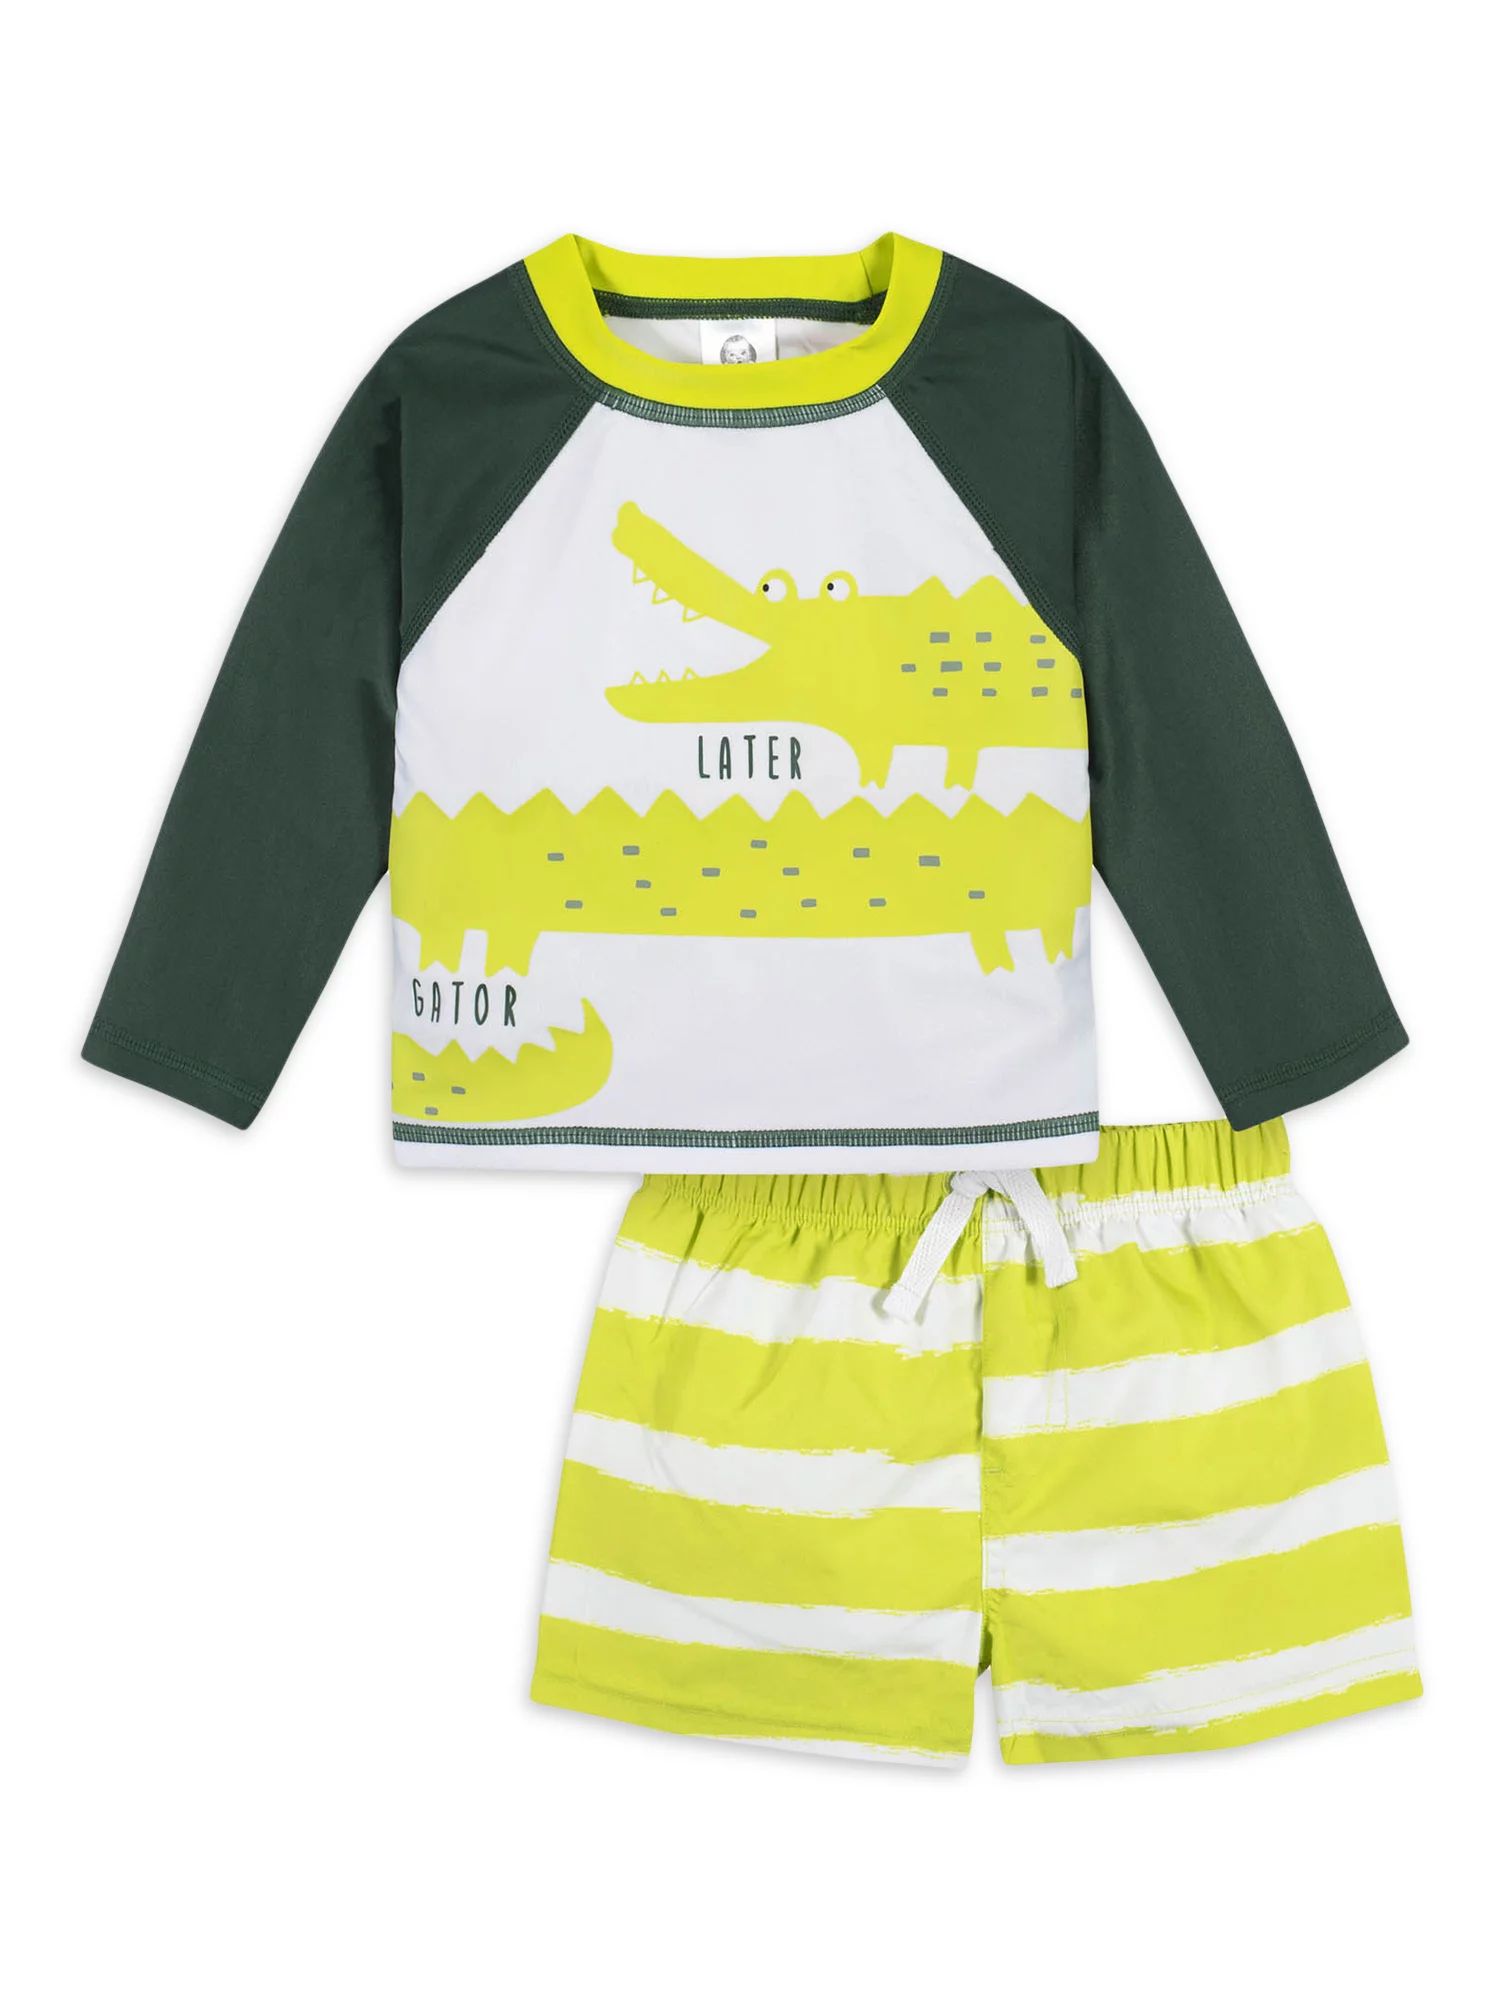 Gerber Baby & Toddler Boy Rashguard & Swim Trunks Set with UPF 50+, 2-Piece (0/3M - 5T) | Walmart (US)